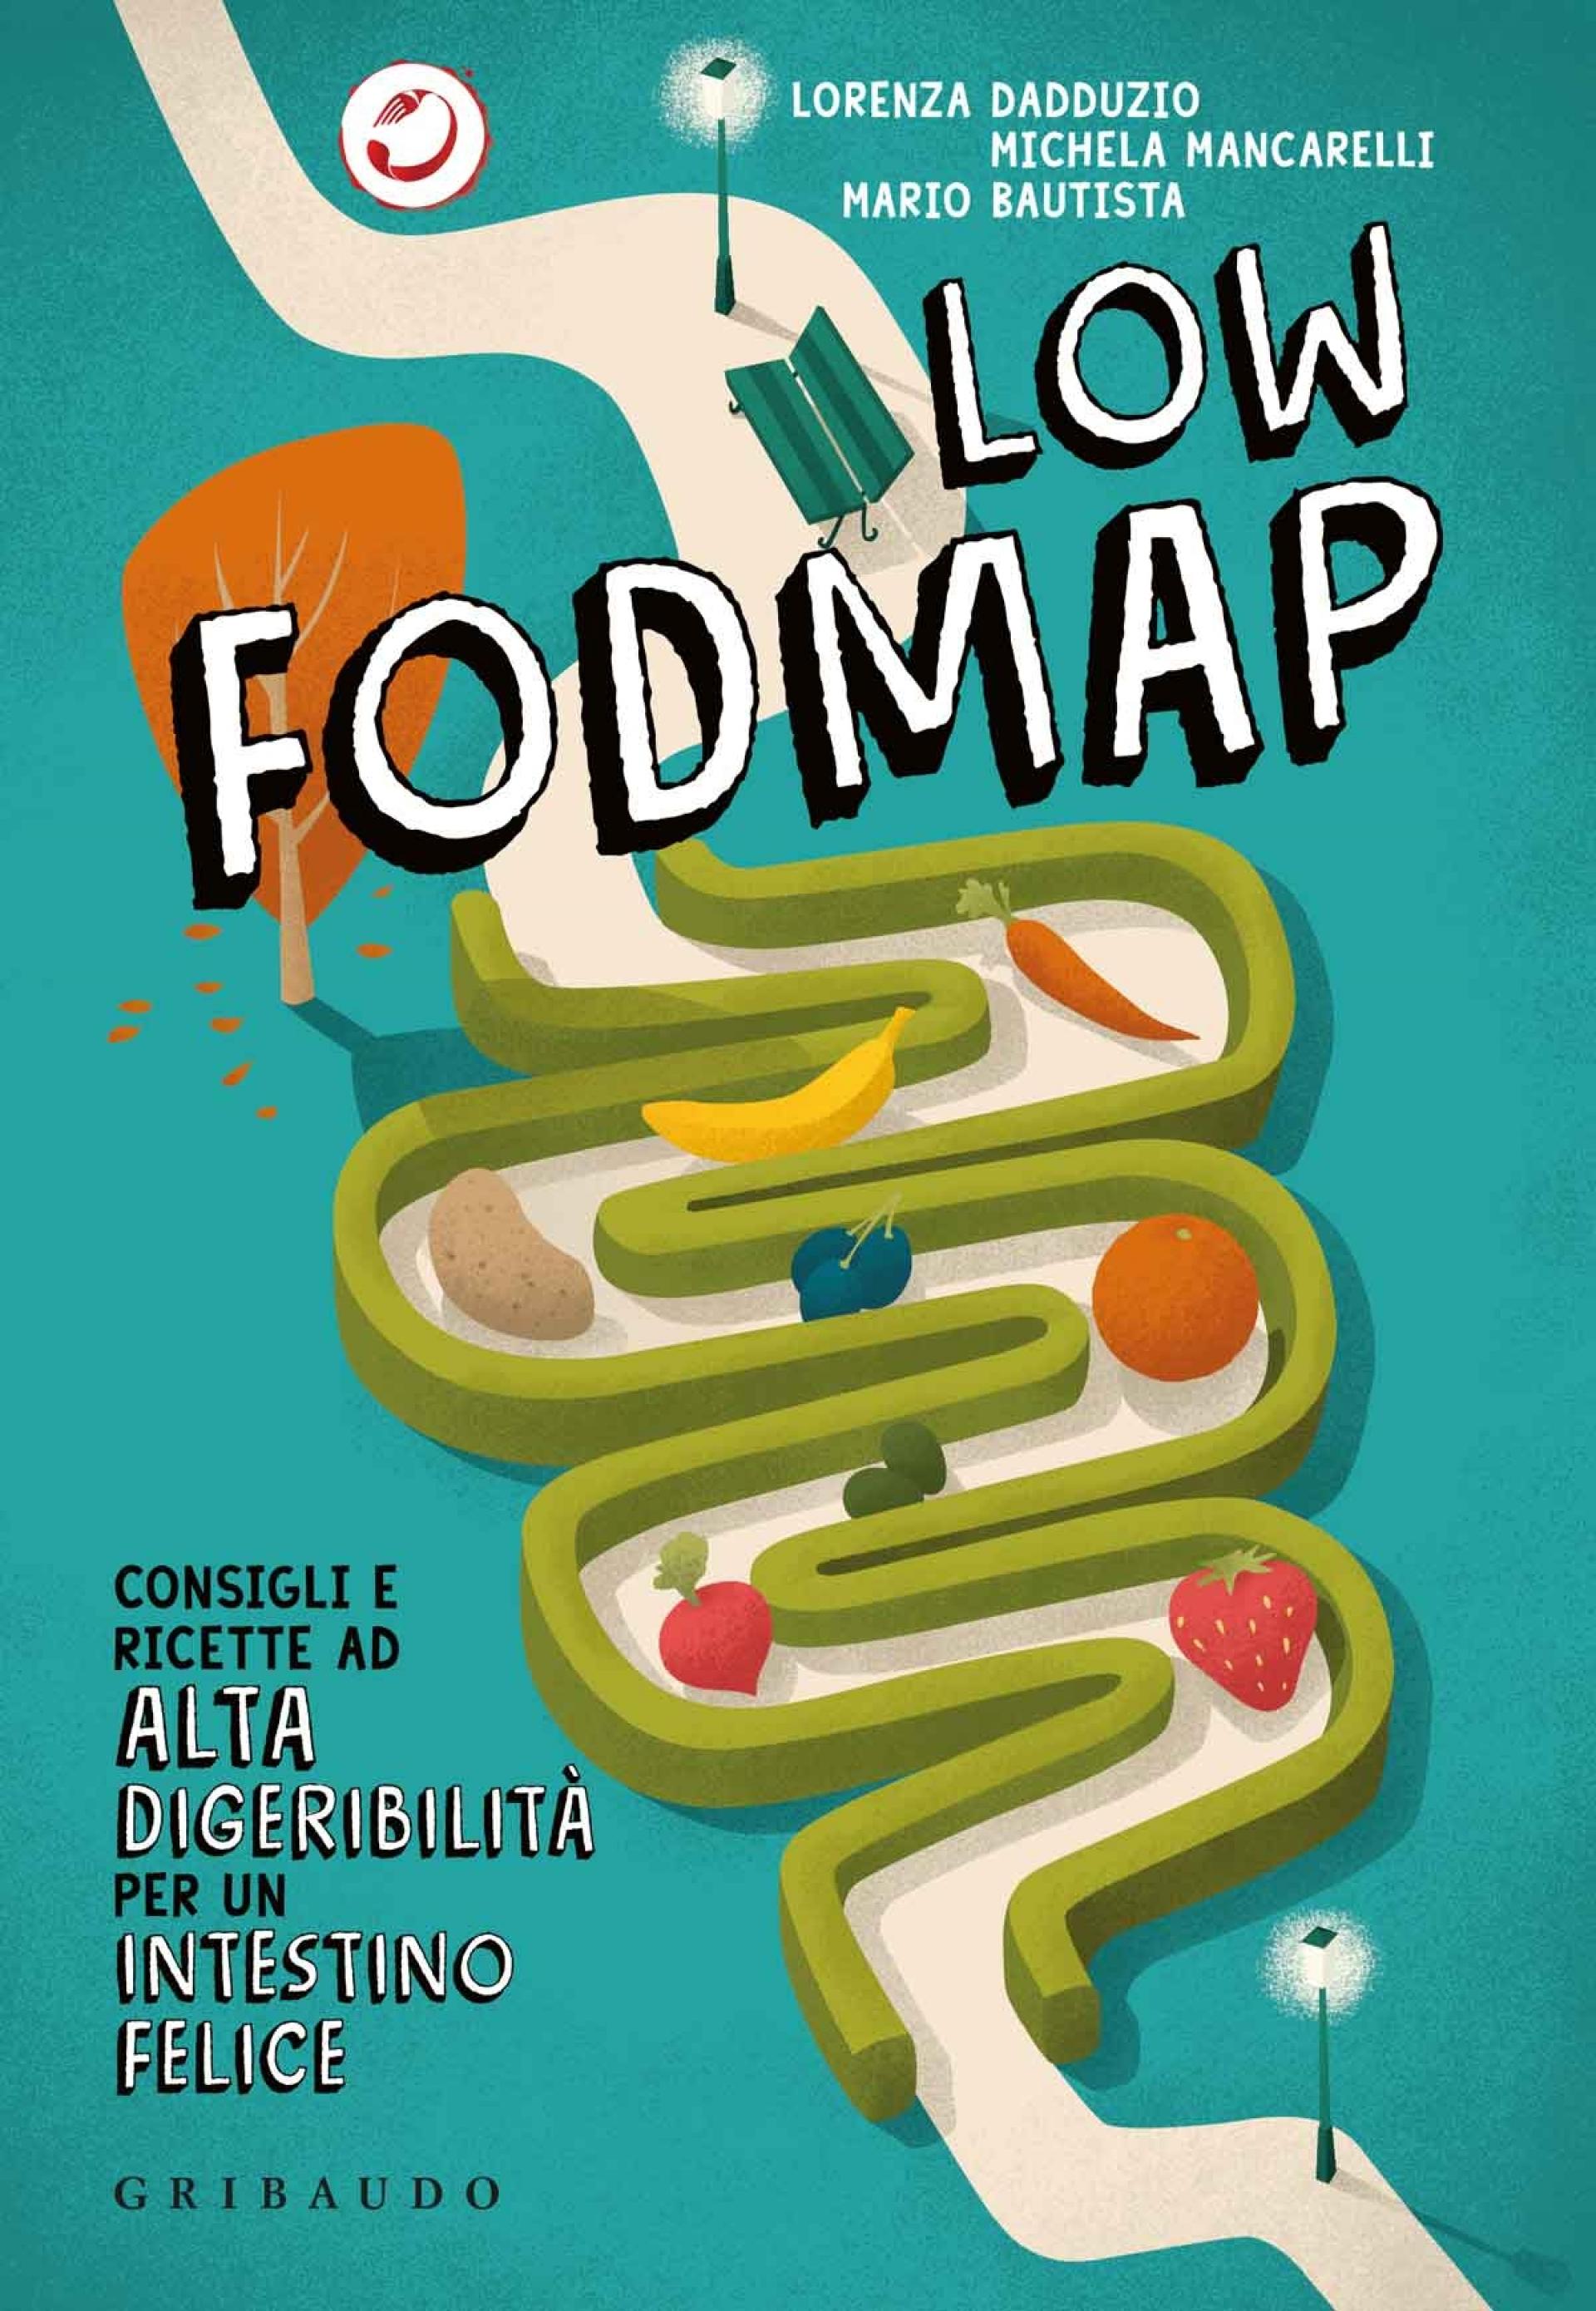 cucinaMancina e il suo libro Low FODMAP vi aspettano in libreria. Consigli e ricette per coccolare gli intestini arrabbiati